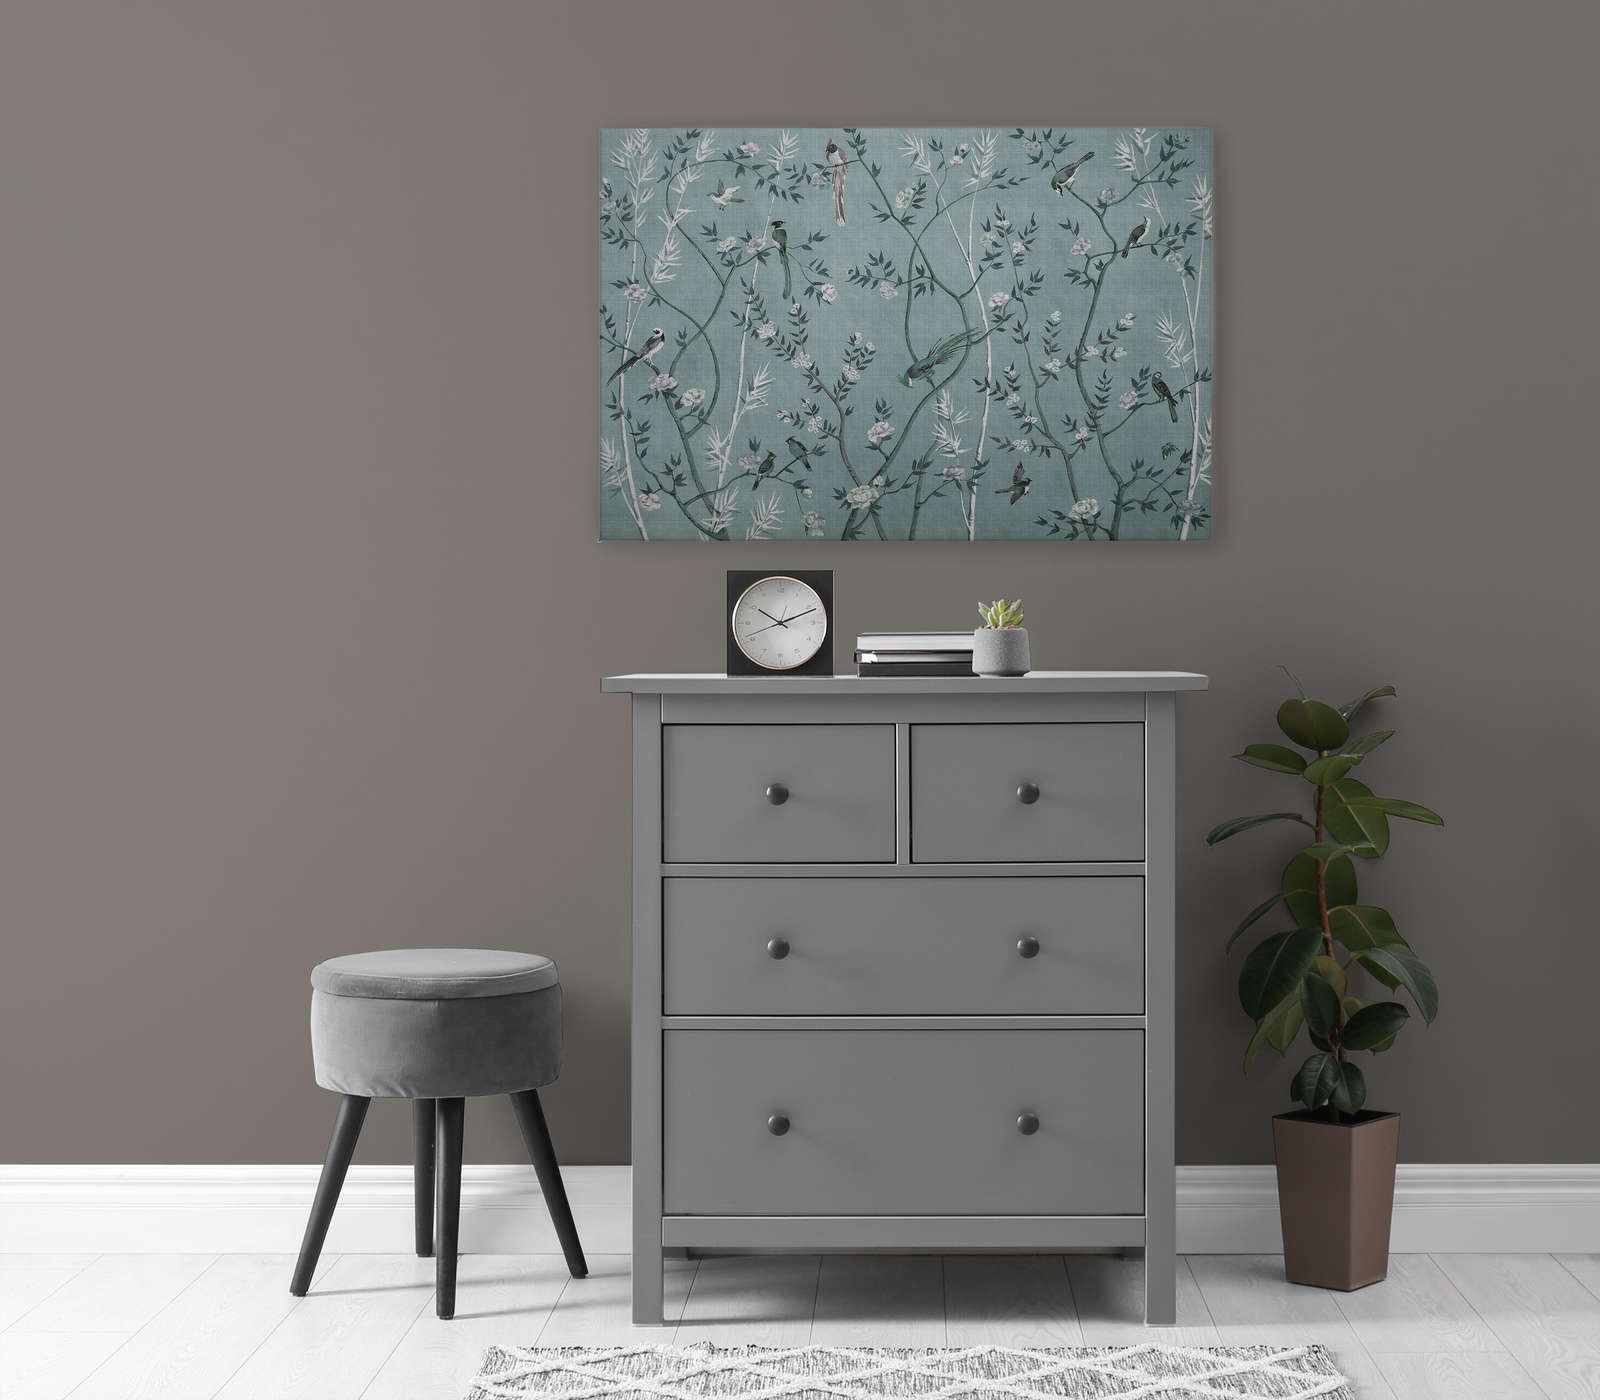             Tea Room 1 - Leinwandbild Vögel & Blüten Design in Petrol & Weiß – 0,90 m x 0,60 m
        